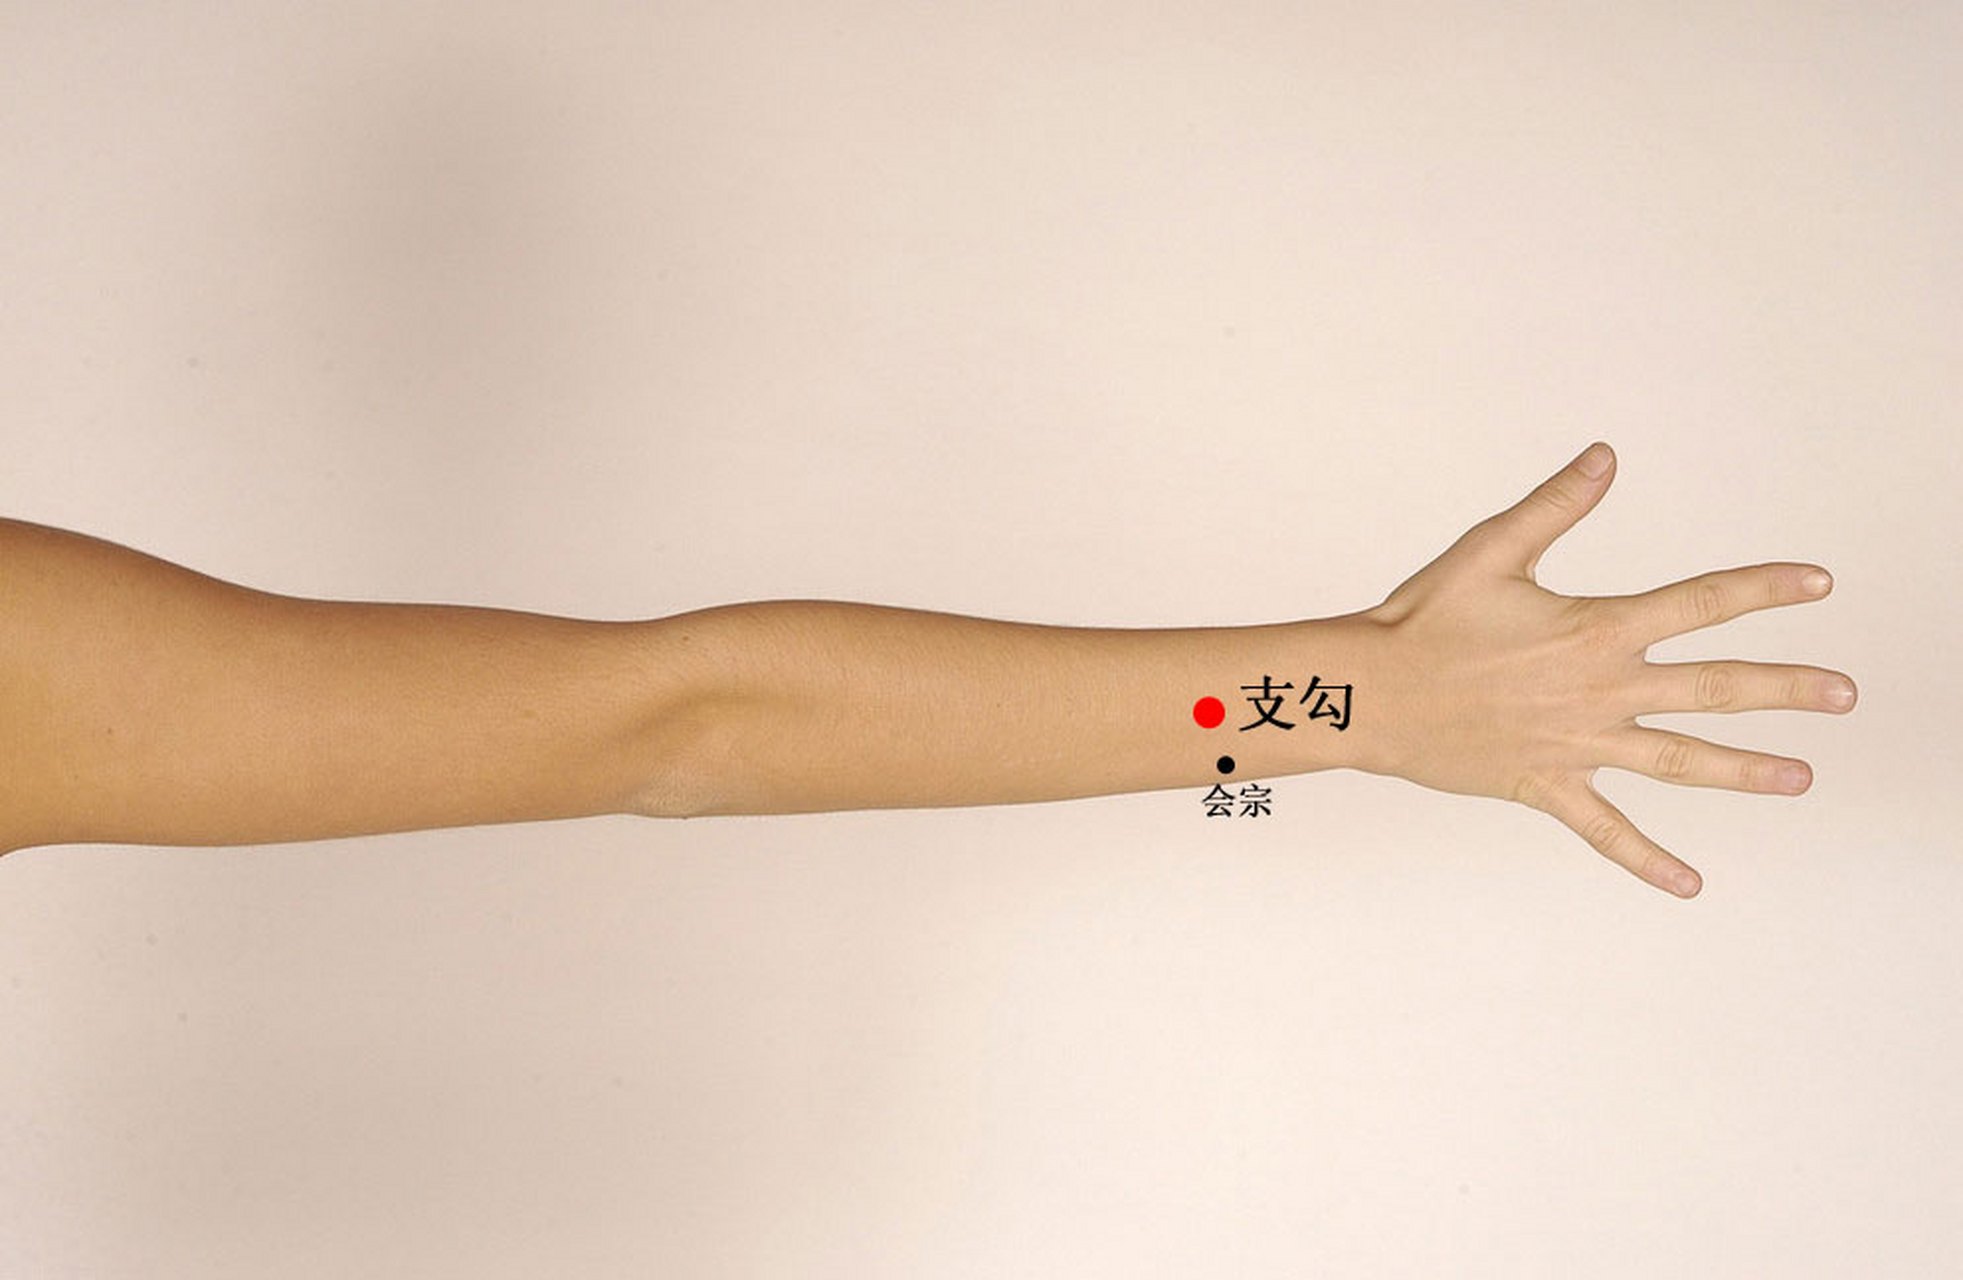 1,支沟穴:支沟穴位于手臂内侧,当手臂弯曲时,手肘内侧的凹陷处